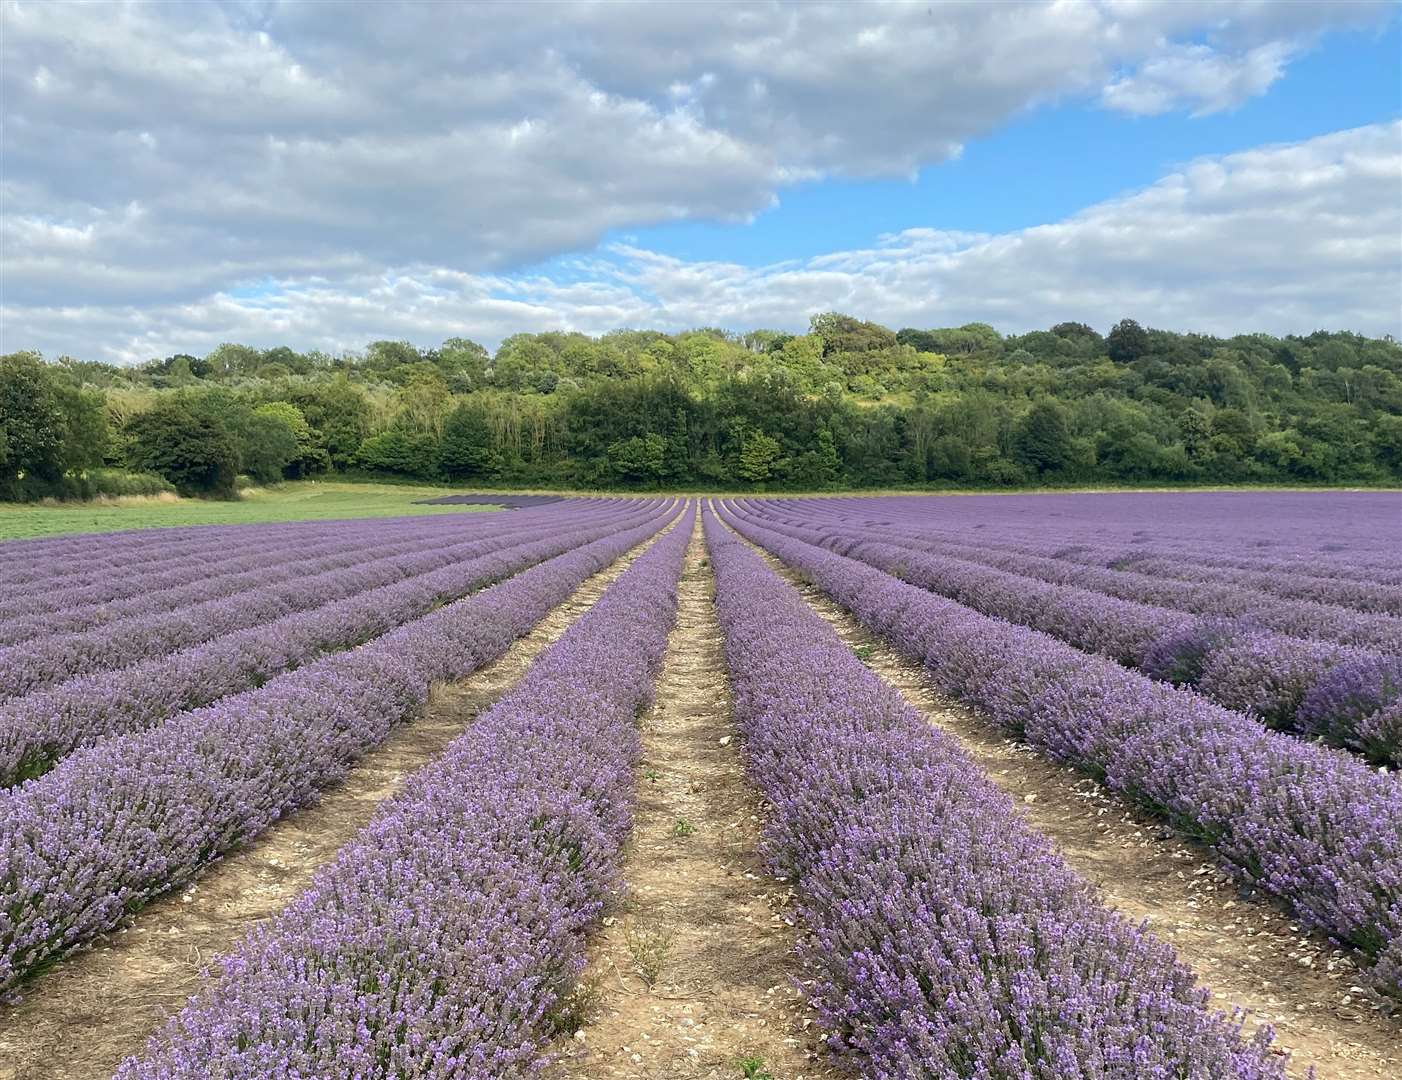 Castle Farm in Shoreham, Sevenoaks, is one of most Instagrammable lavender fields in the UK